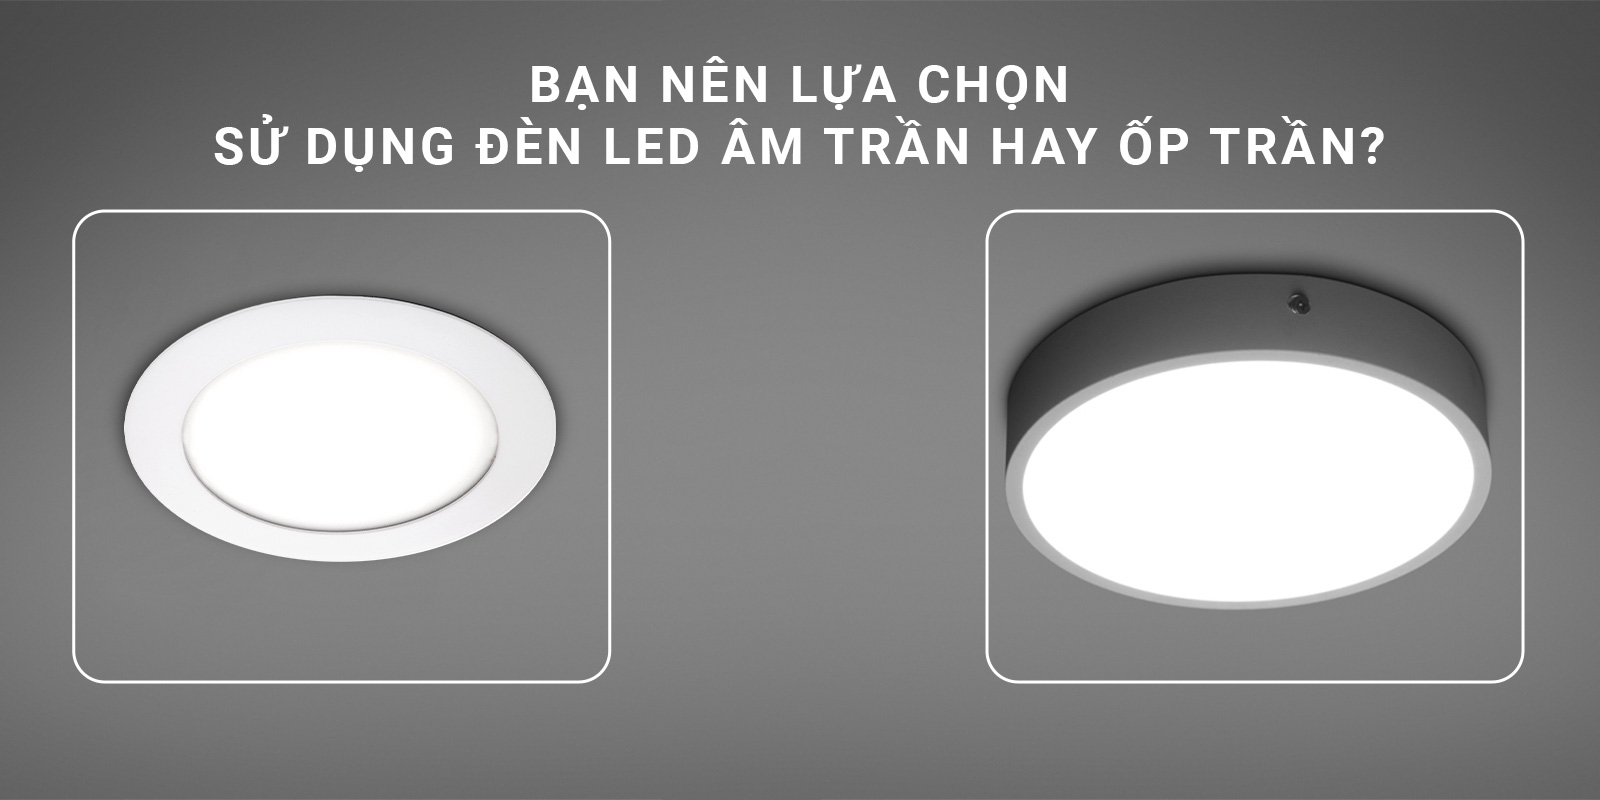 Bạn nên lựa chọn sử dụng đèn LED âm trần hay ốp trần?